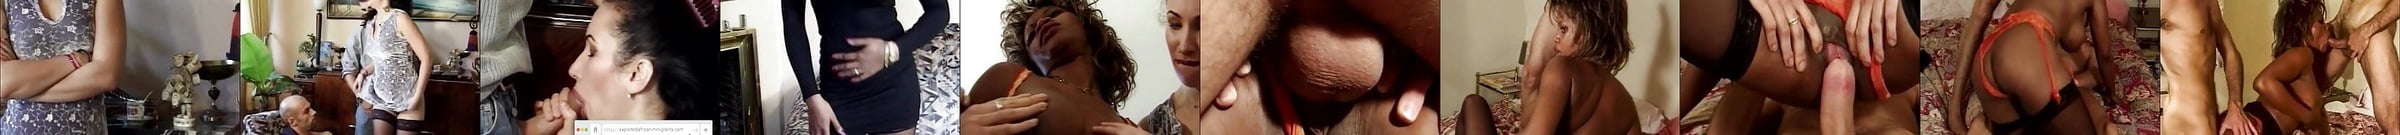 Vidéos Porno Sex Party Durée En Vedette Xhamster